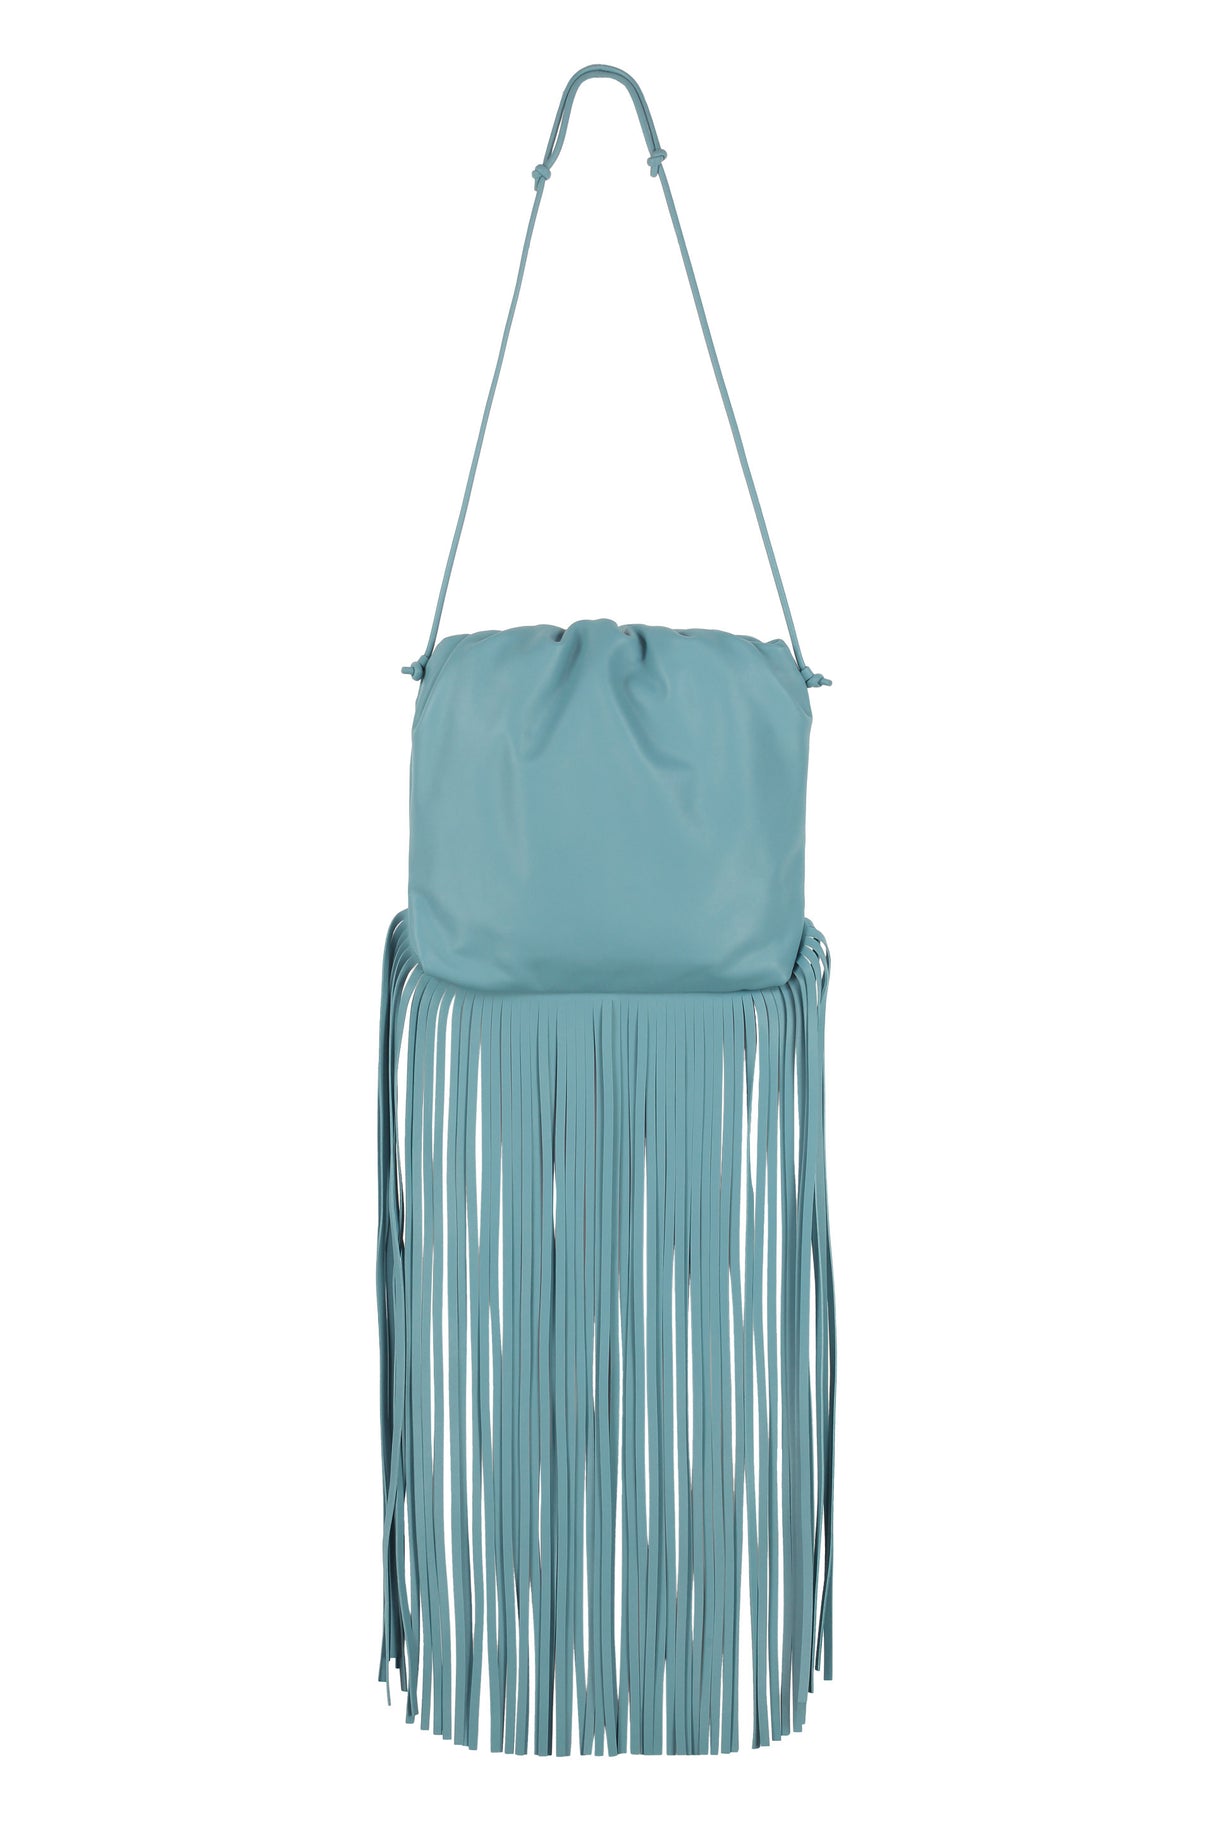 Túi xách đeo vai da xanh cho phụ nữ - Bộ sưu tập mùa thu đông 2020